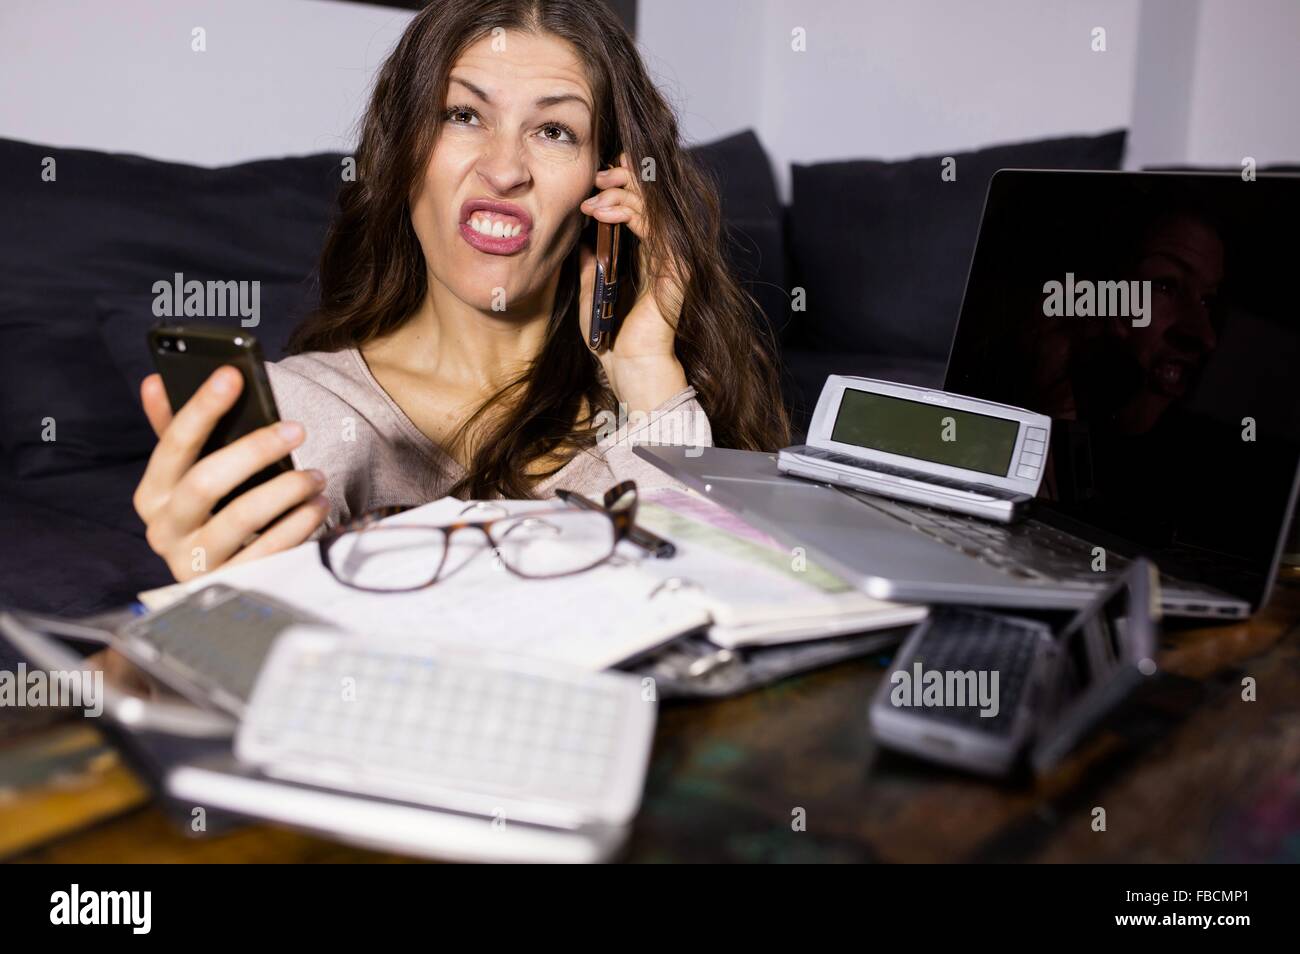 Business Woman phoning entouré par la technologie des télécommunications, de l'ordinateur portable mobile iphone câble Banque D'Images